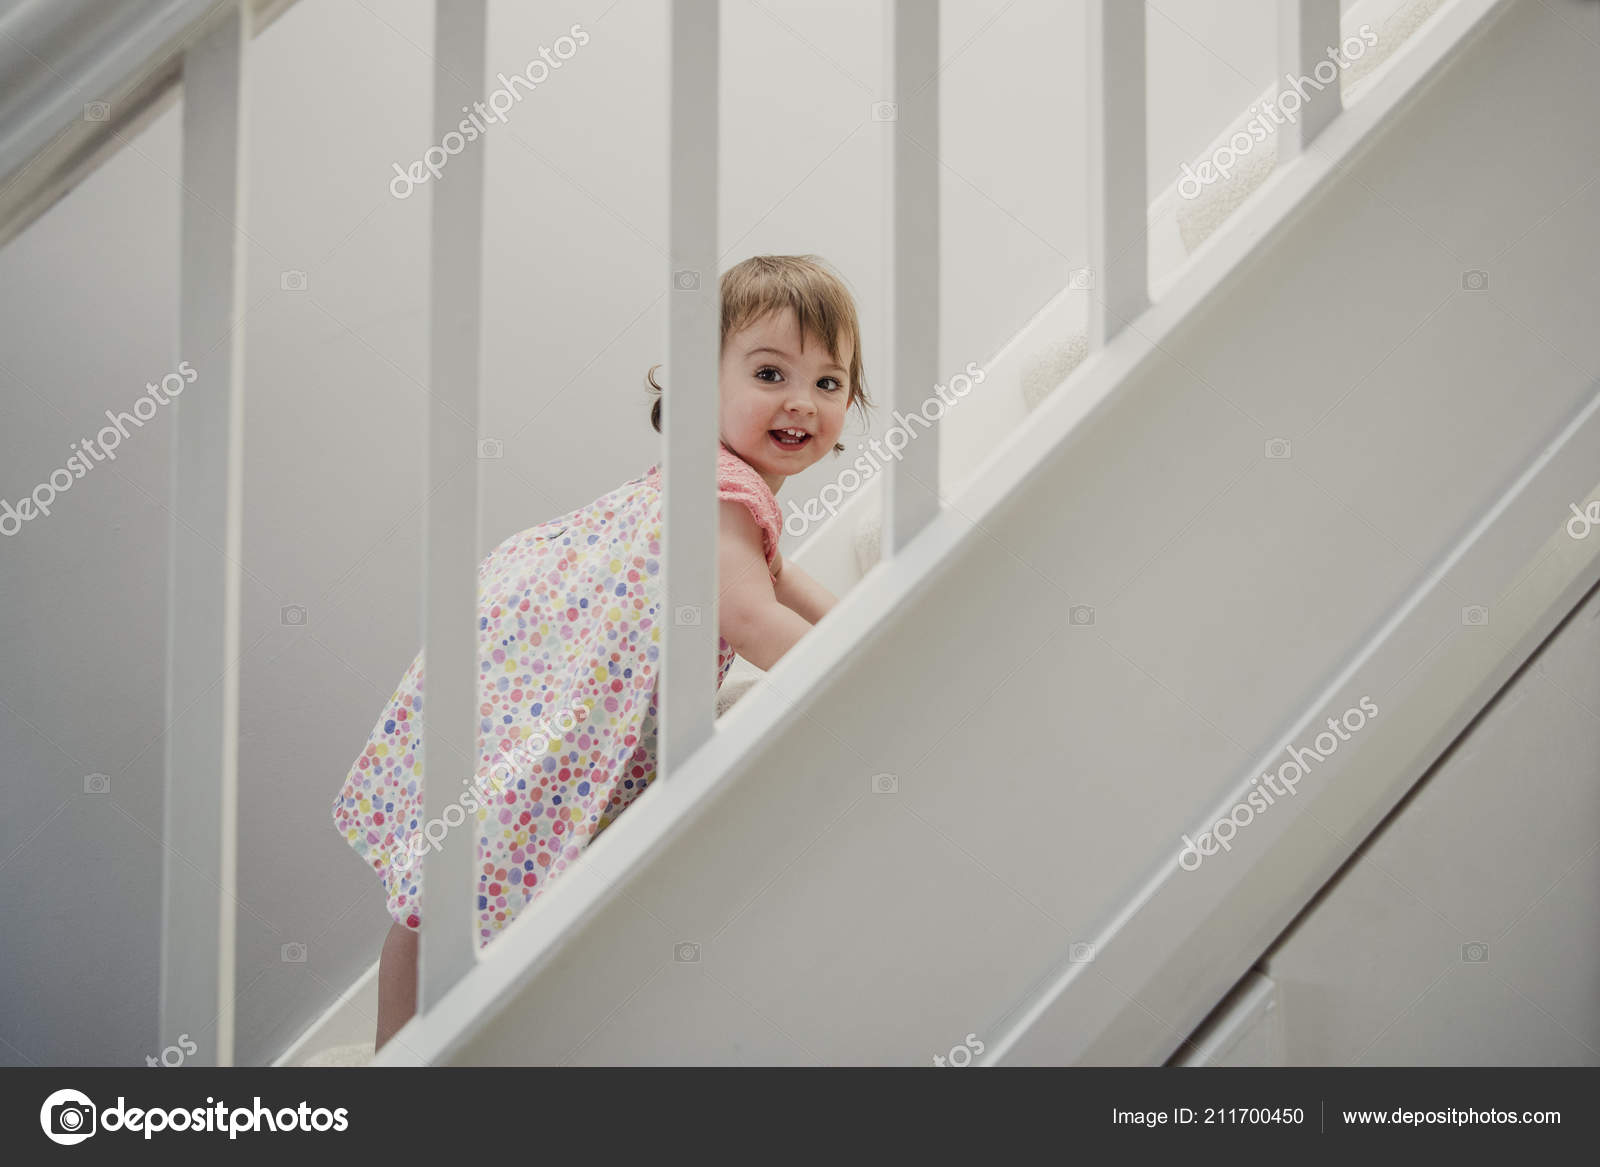 kid climbing stairs